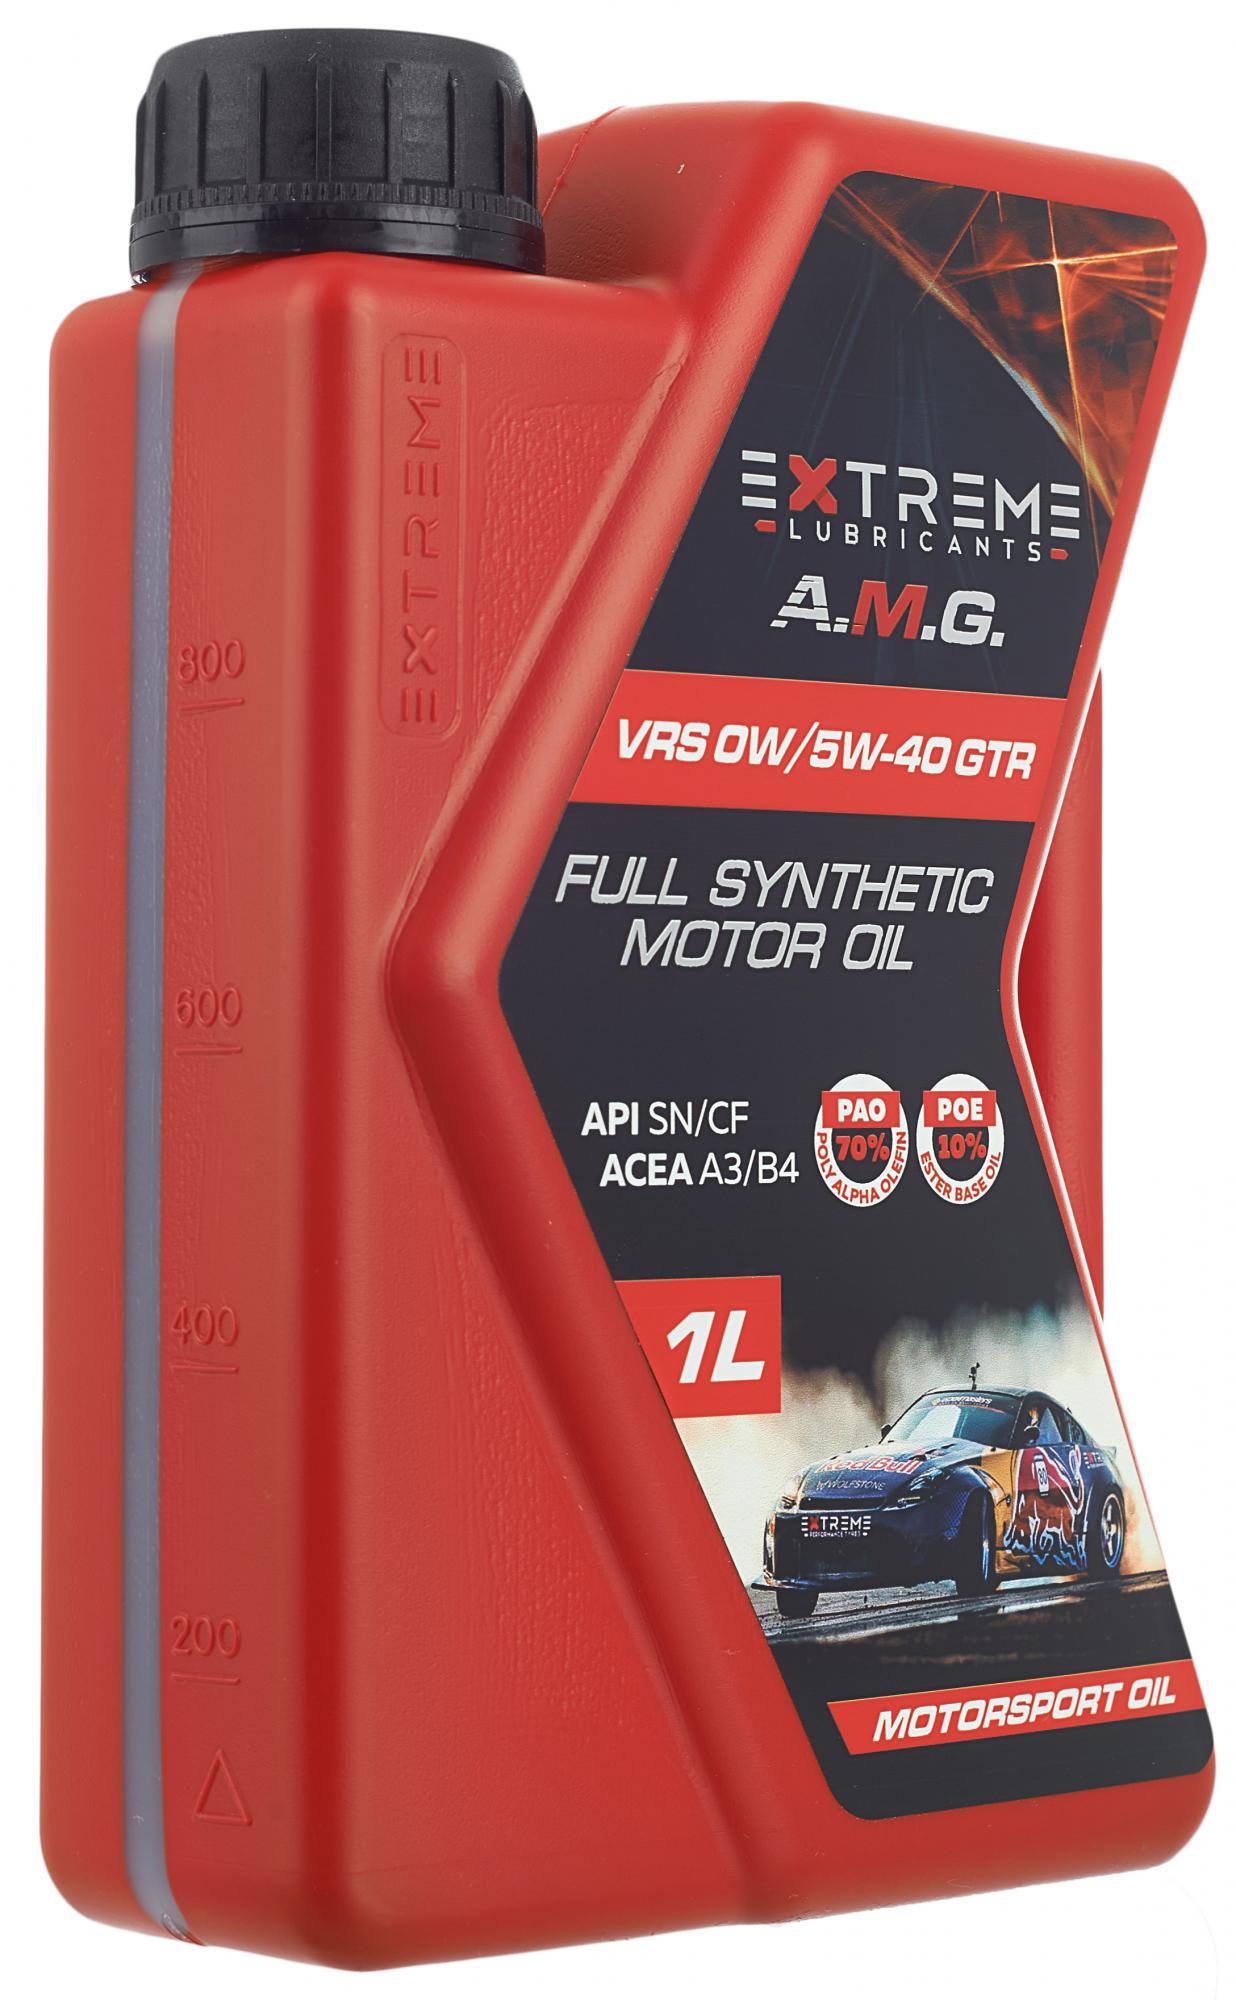 Extreme 5w30 купить. Extreme a.m.g. VRS 0w/5w-40 GTR. Extreme AMG vr2 5w-40 GTC. Extreme 5w-40 GTR. Extreme a.m.g. vr2 5w-40 GTC (5 Л).